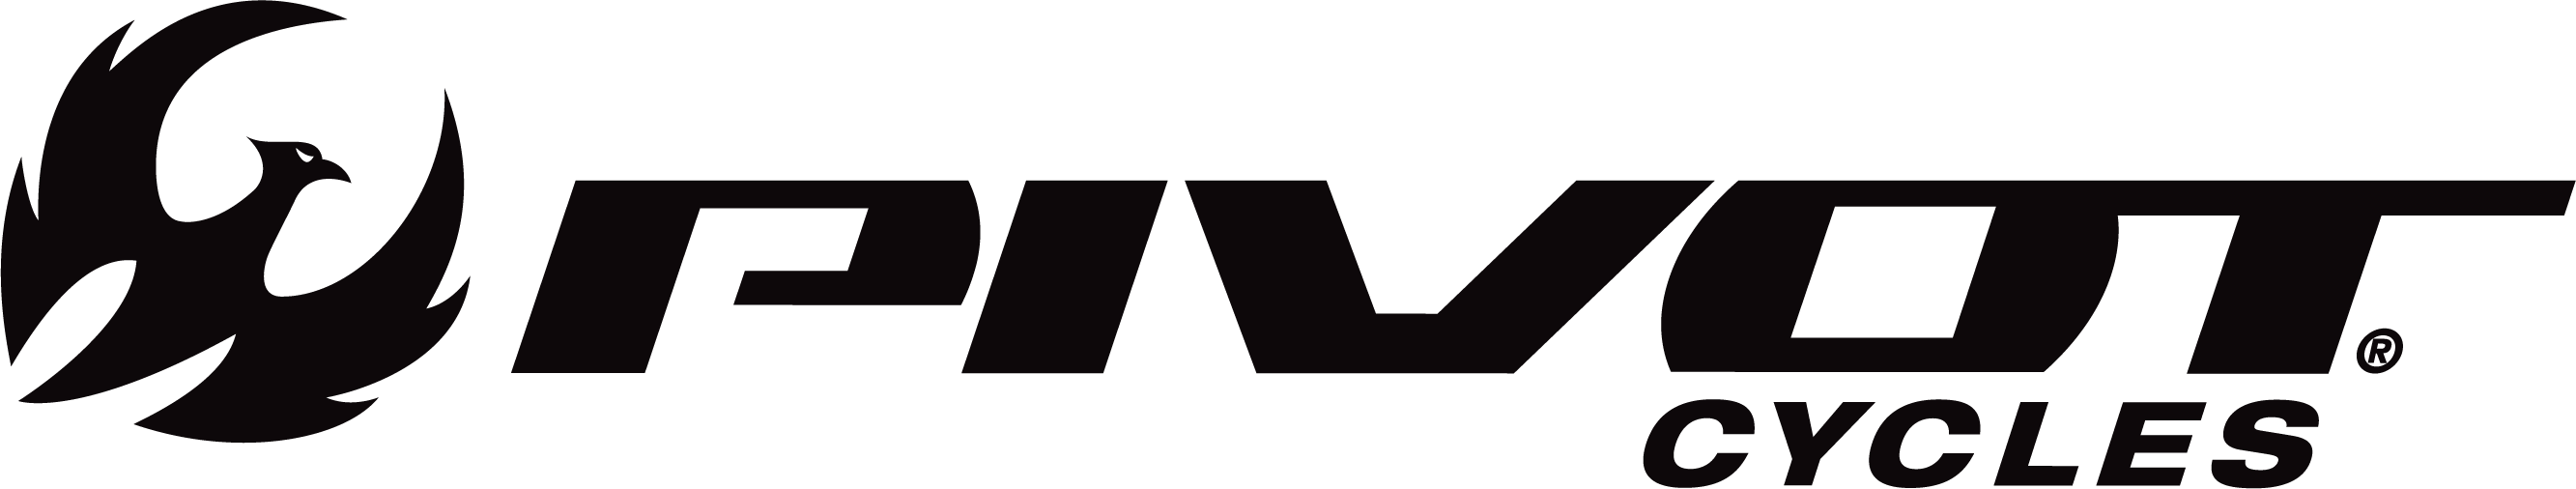 pivot cycles brand logo